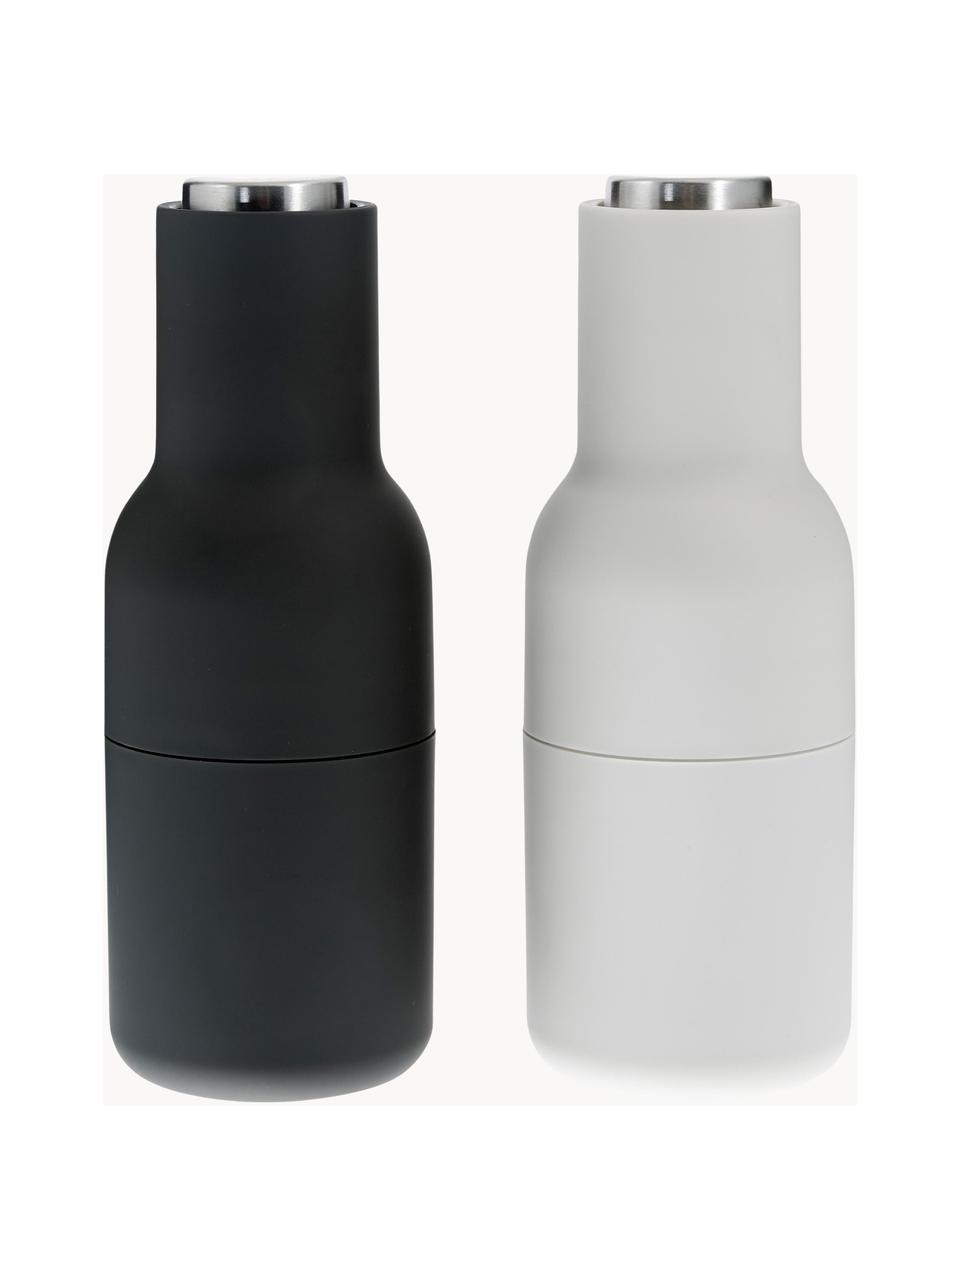 Designer zout & pepermolen Bottle Grinder met deksel van edelstaal, set van 2, Deksel: edelstaal, Antraciet, wit, zilverkleurig, Ø 8 x H 21 cm